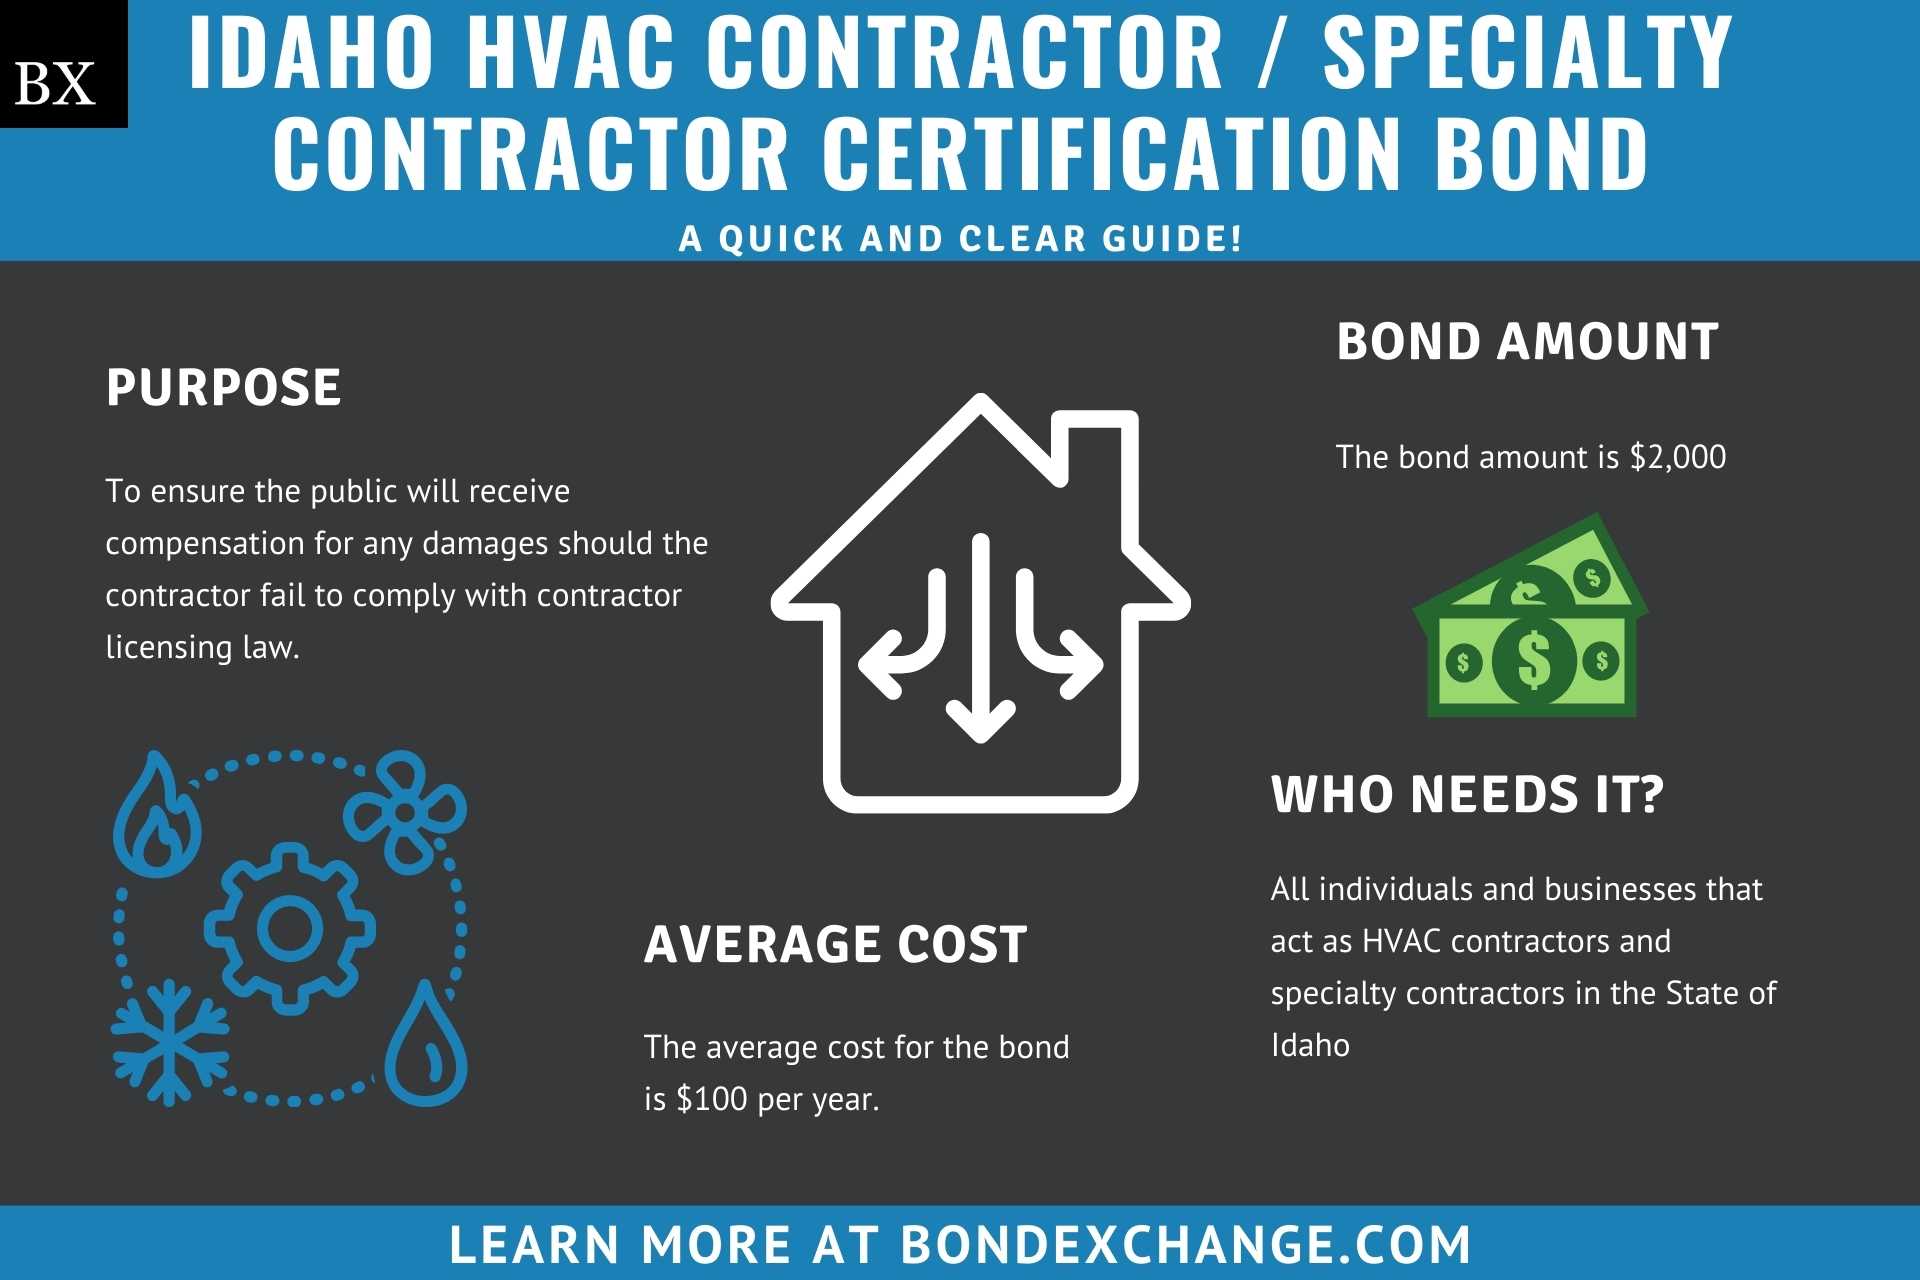 Idaho HVAC Contractor Specialty Contractor Certification Bond